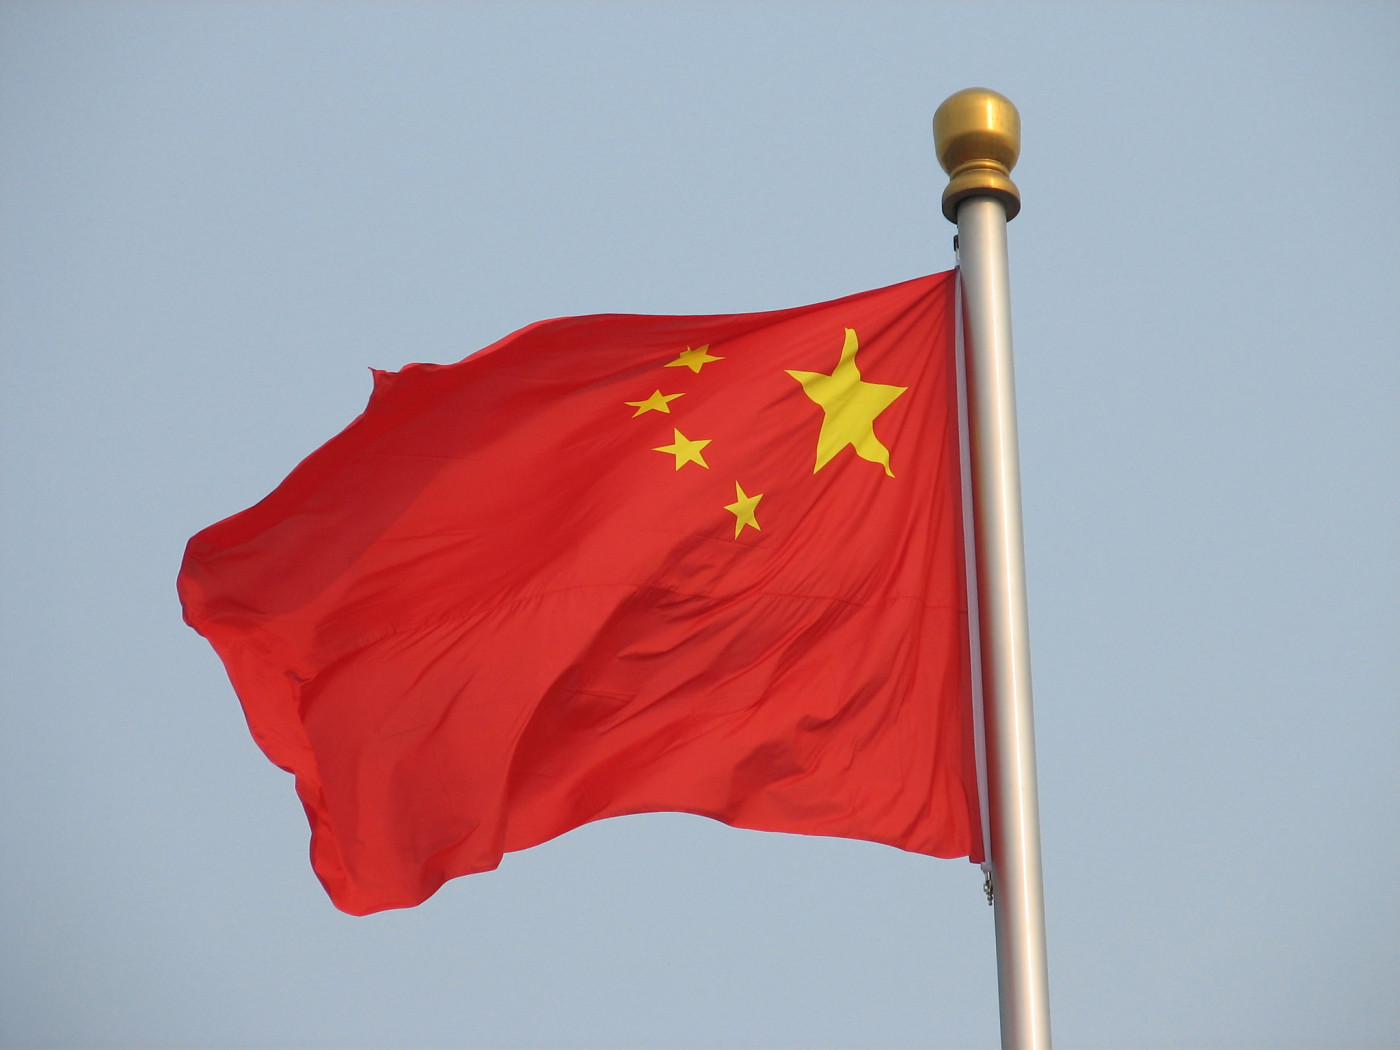 bandeira da china flamulando